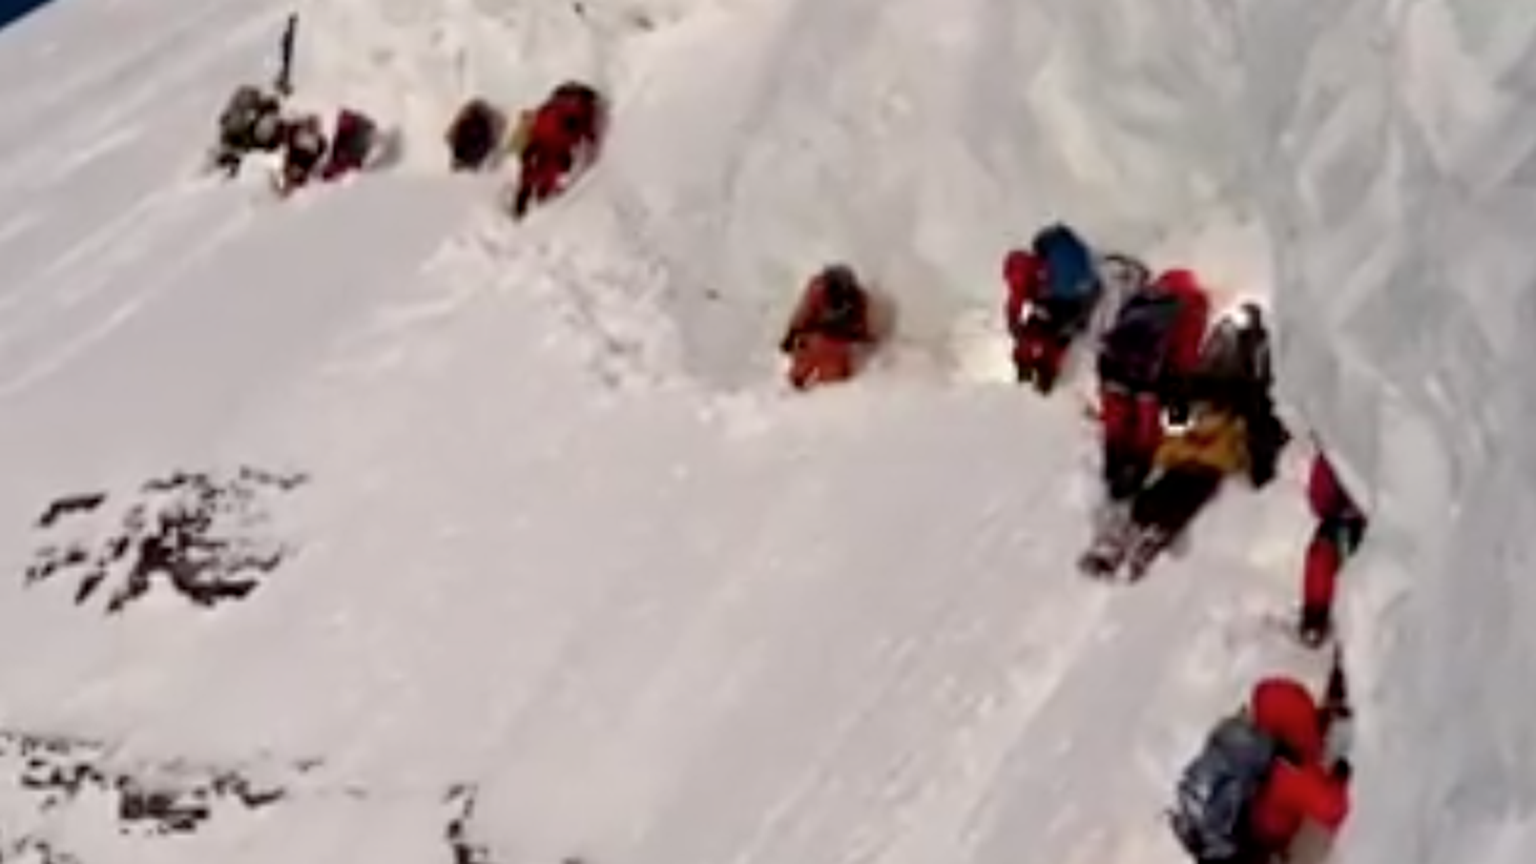 Drama am K2: Bergsteiger ignorieren sterbenden Helfer